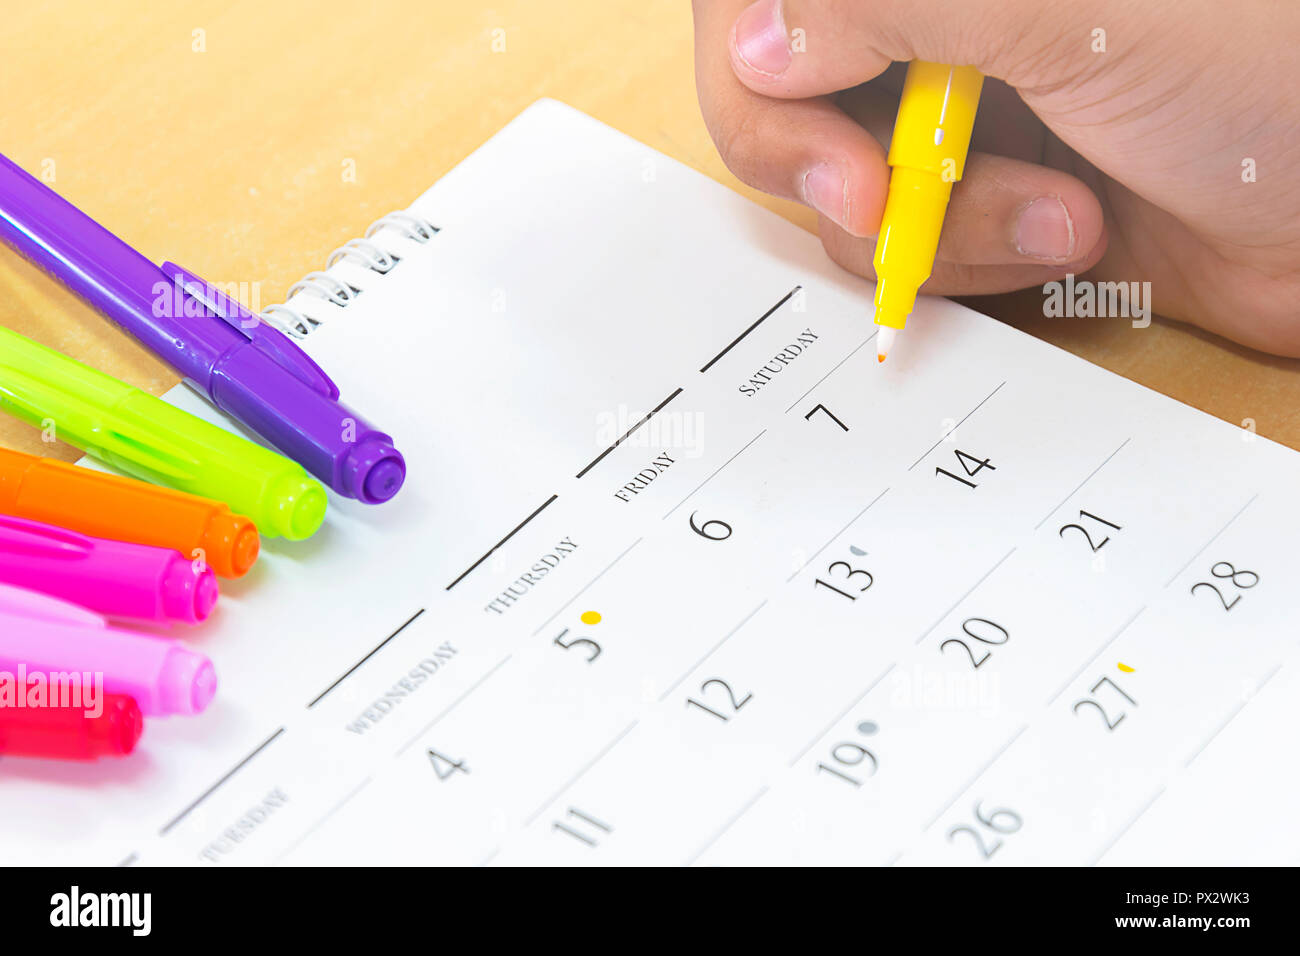 La planification de la vie est une partie importante de l'avenir, la planification d'un itinéraire de vacances, calendrier, stylo jaune, date. Banque D'Images